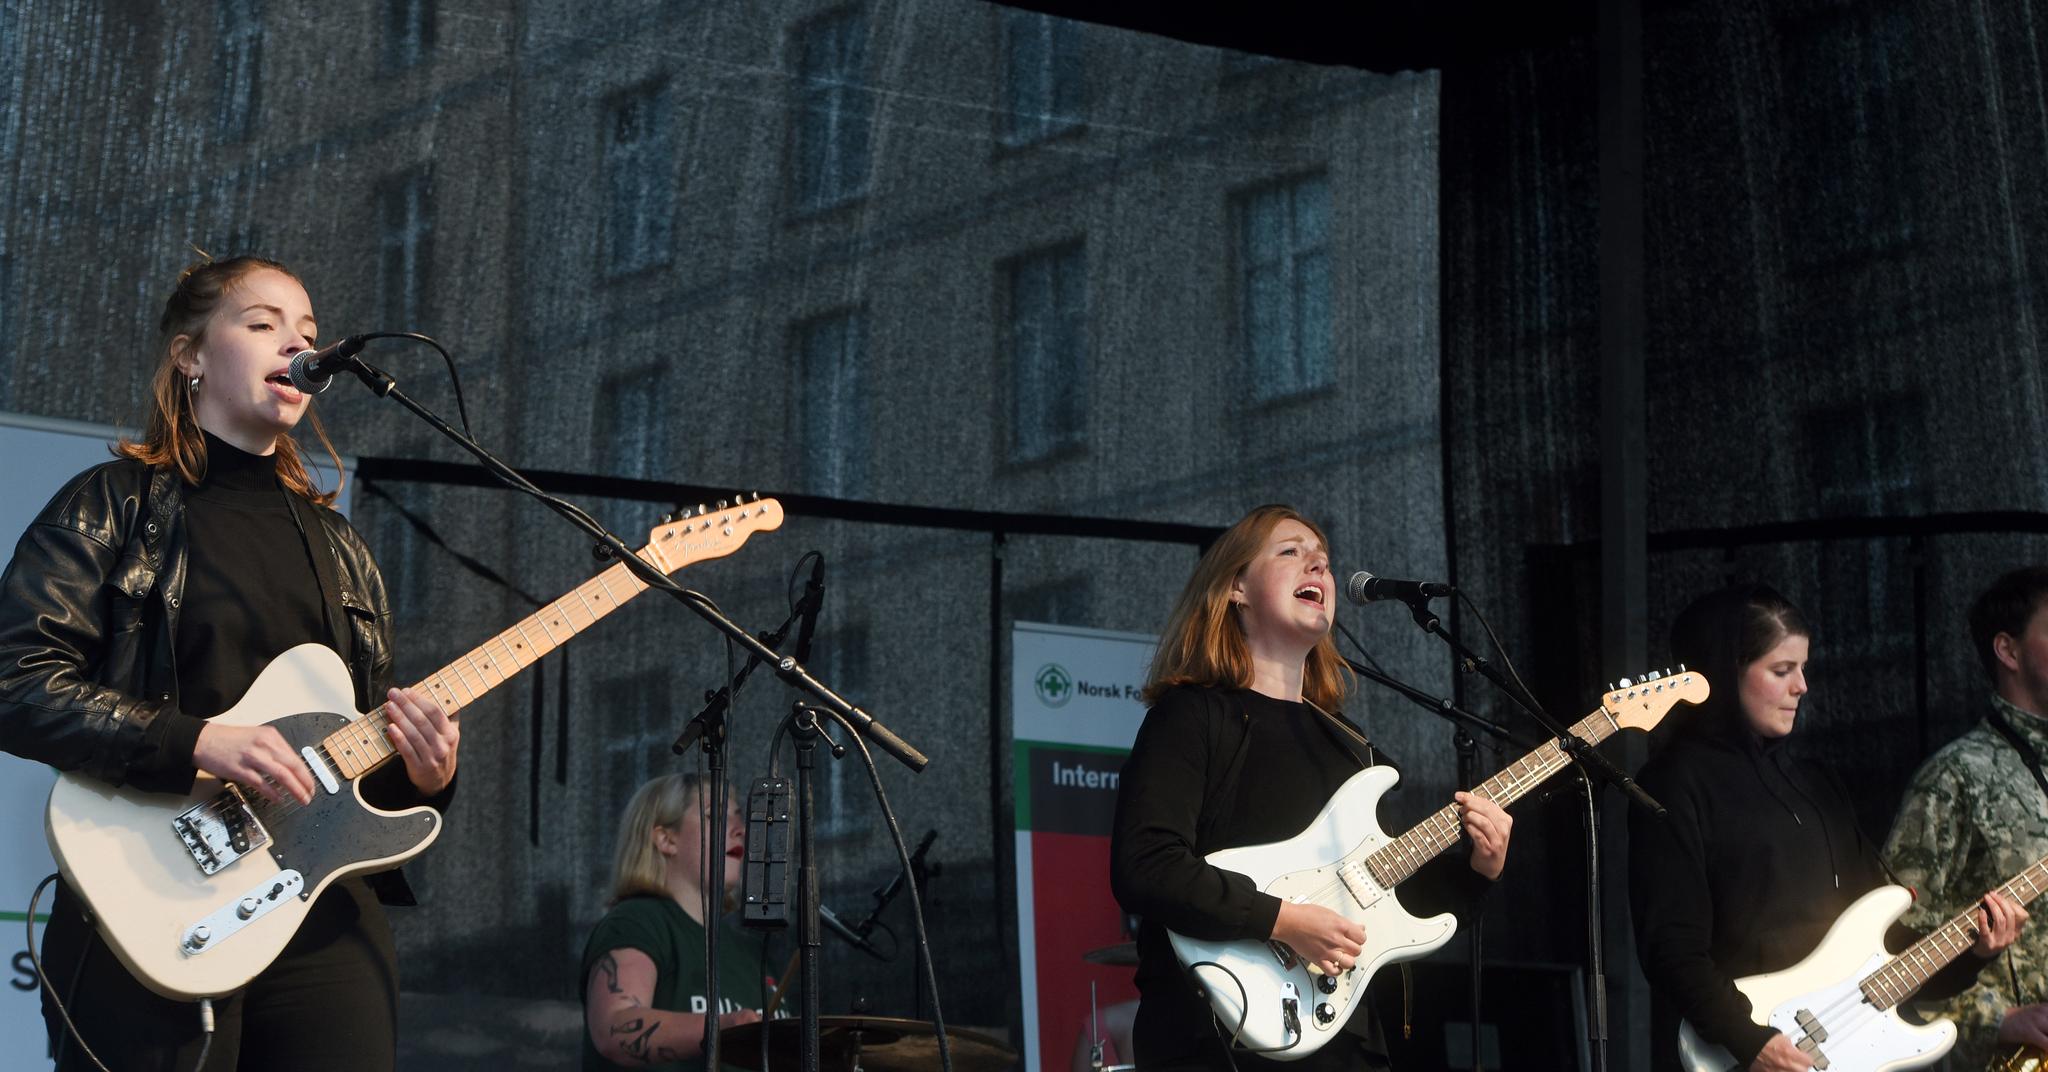 Razika spiller på Norsk folkehjelps arrangement i anledning Den internasjonale flyktningdagen. Fra venstre: Maria Råkil, Embla Karidotter, Marie Amdam og Marie Moe.